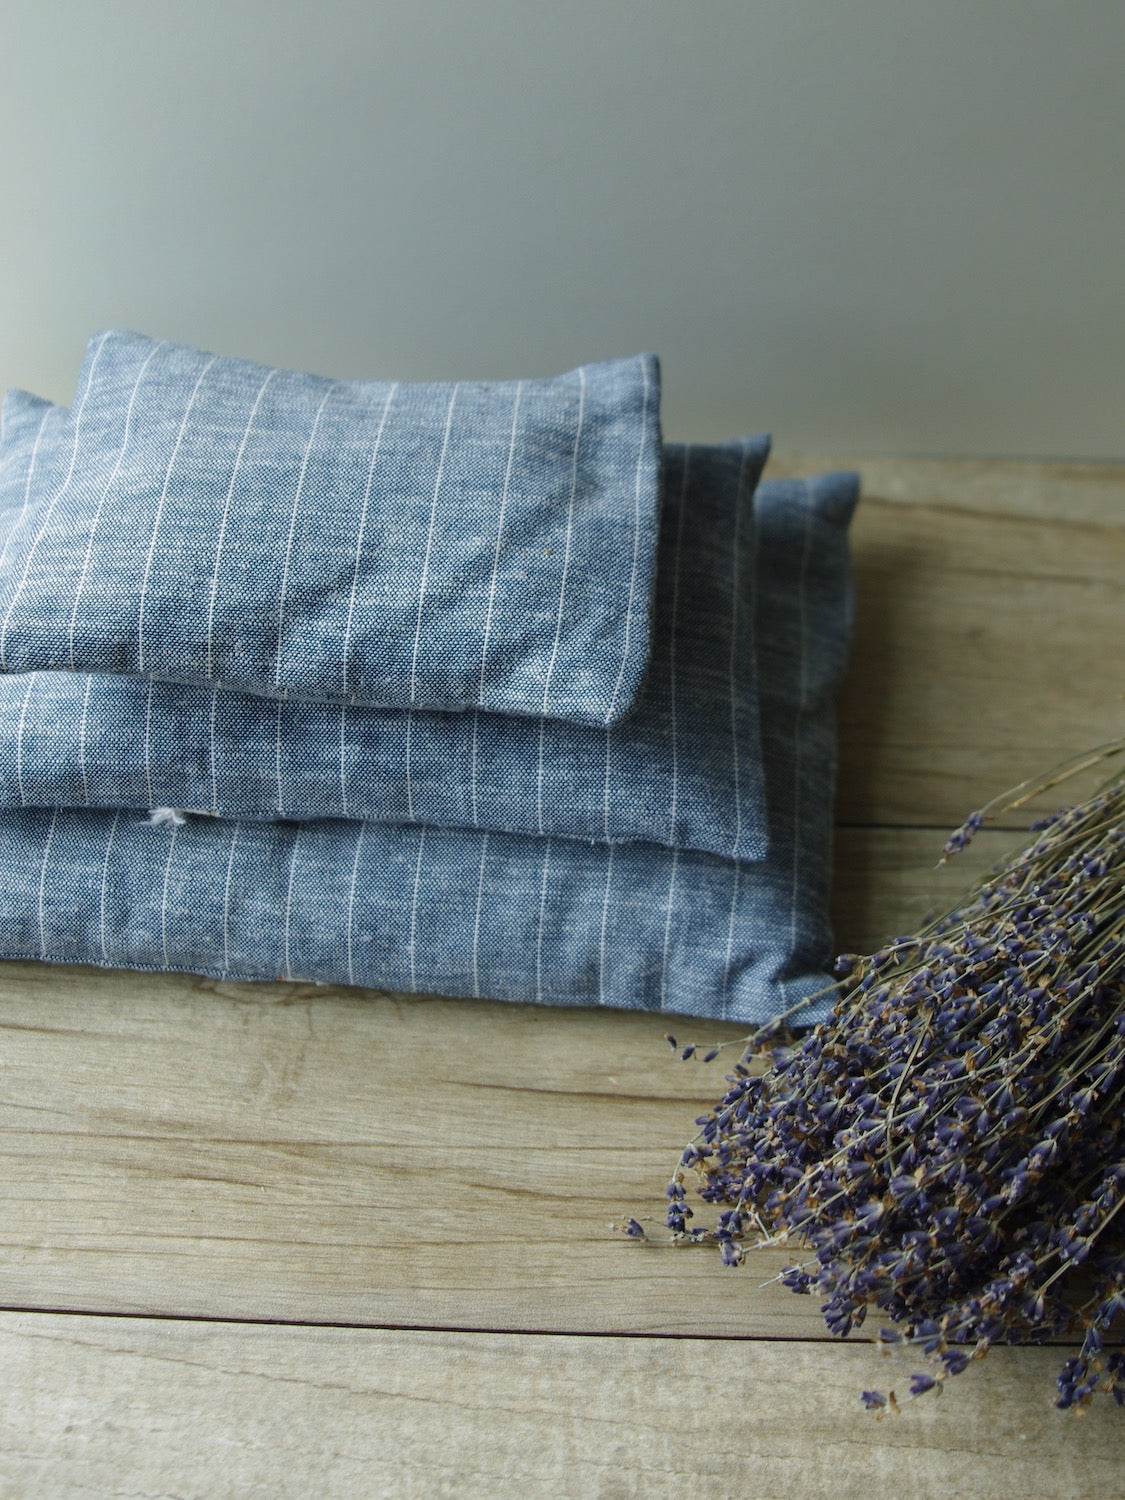 French Lavender Sachet—Blue Striped Linen